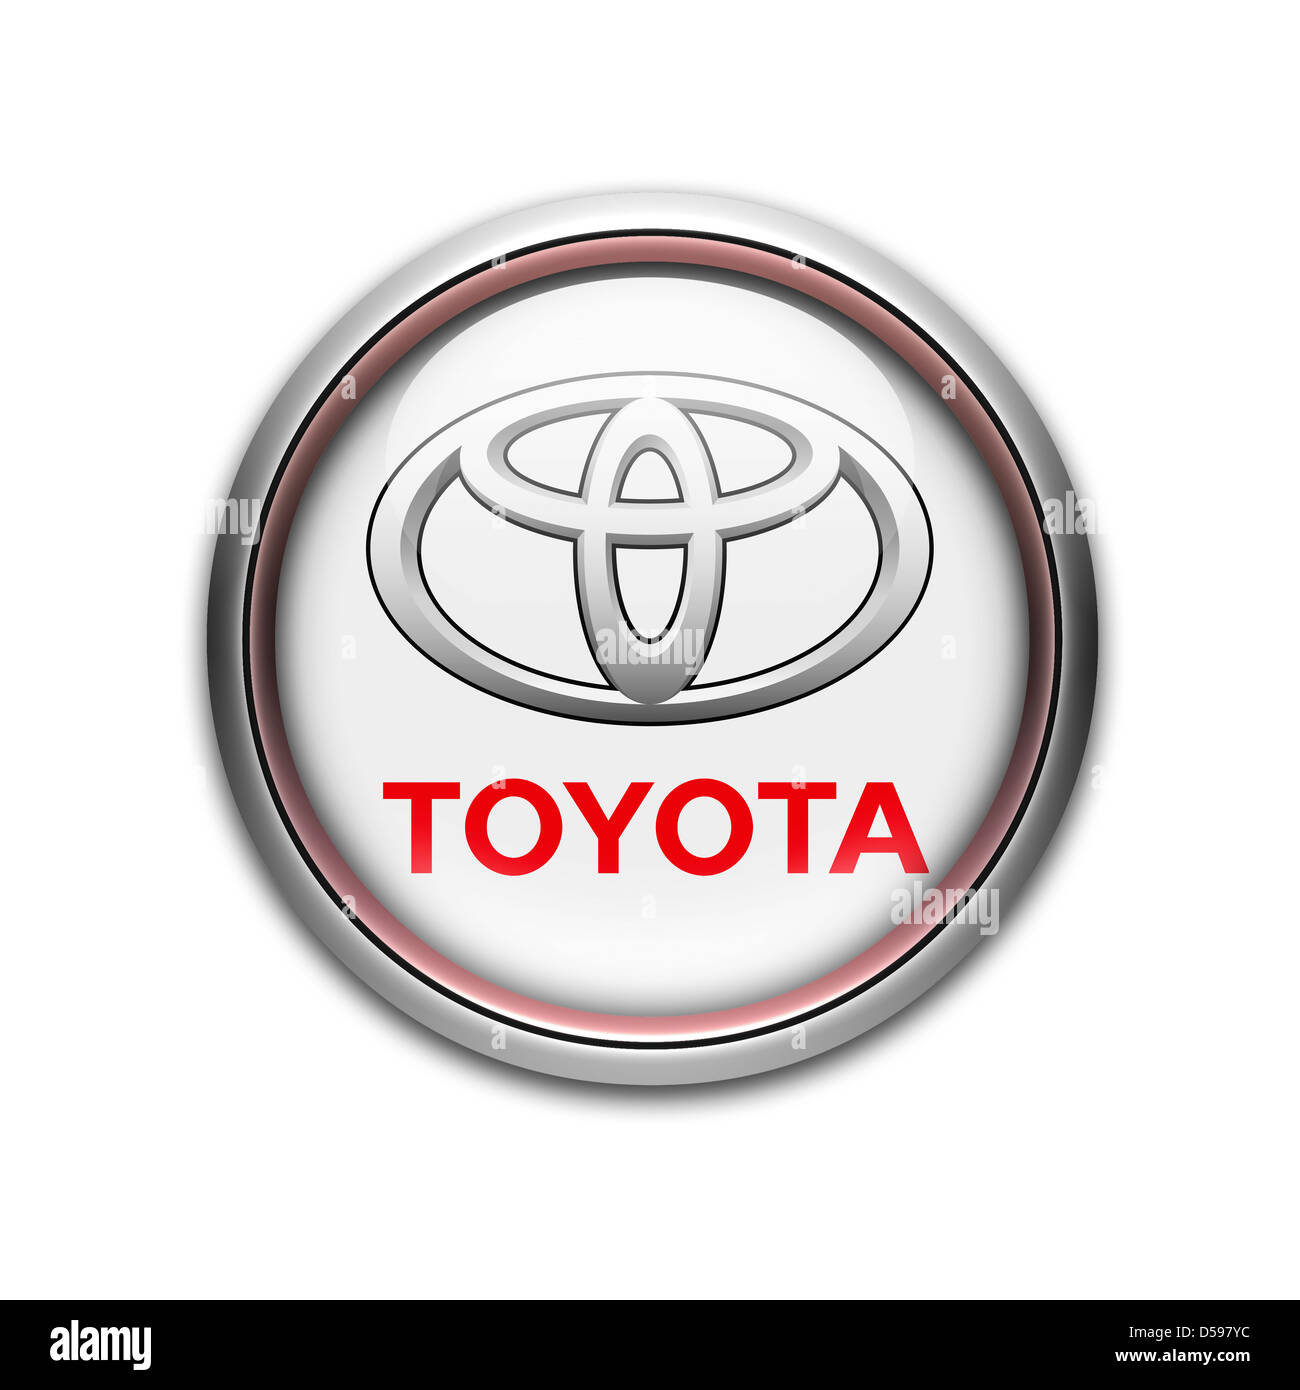 Toyota logo symbol icon flag Stock Photo